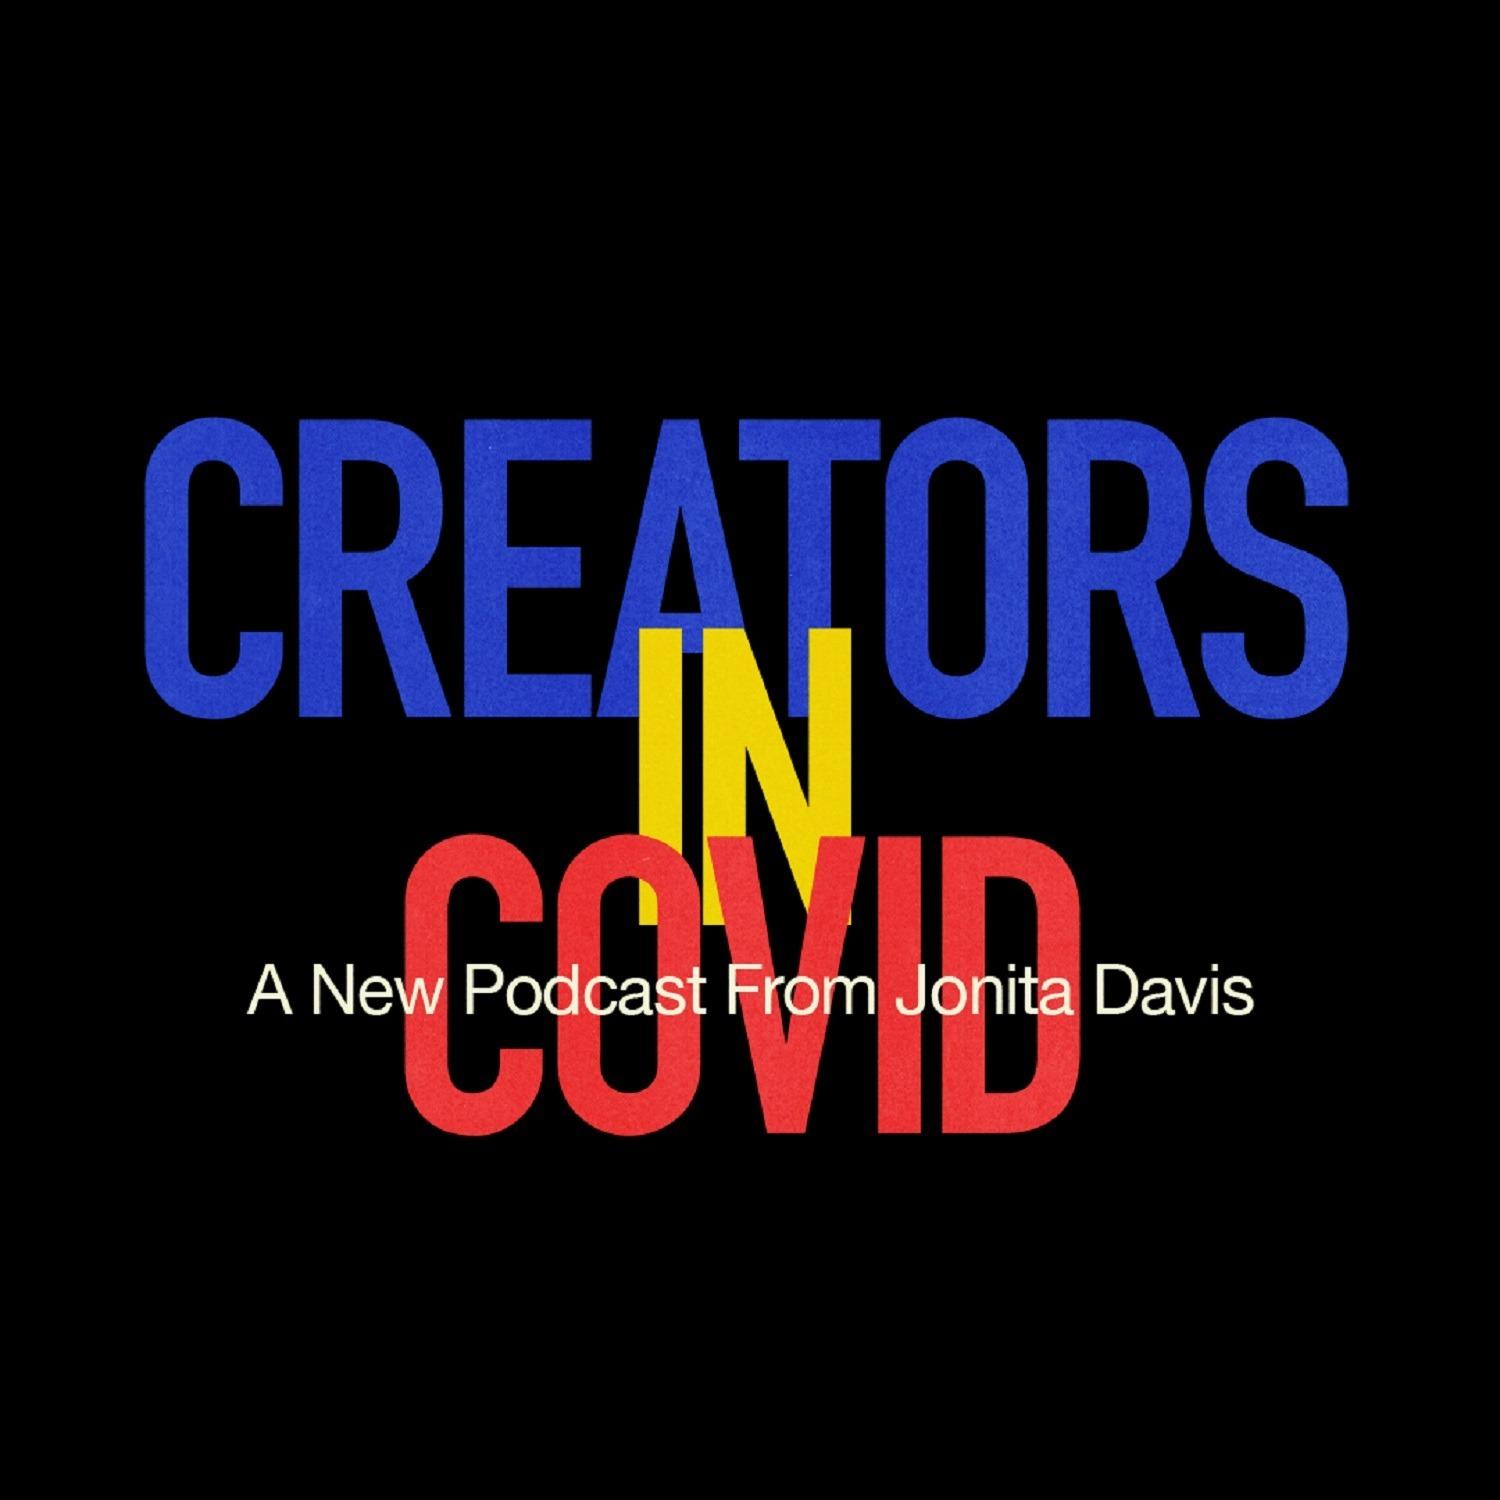 Creators in COVID